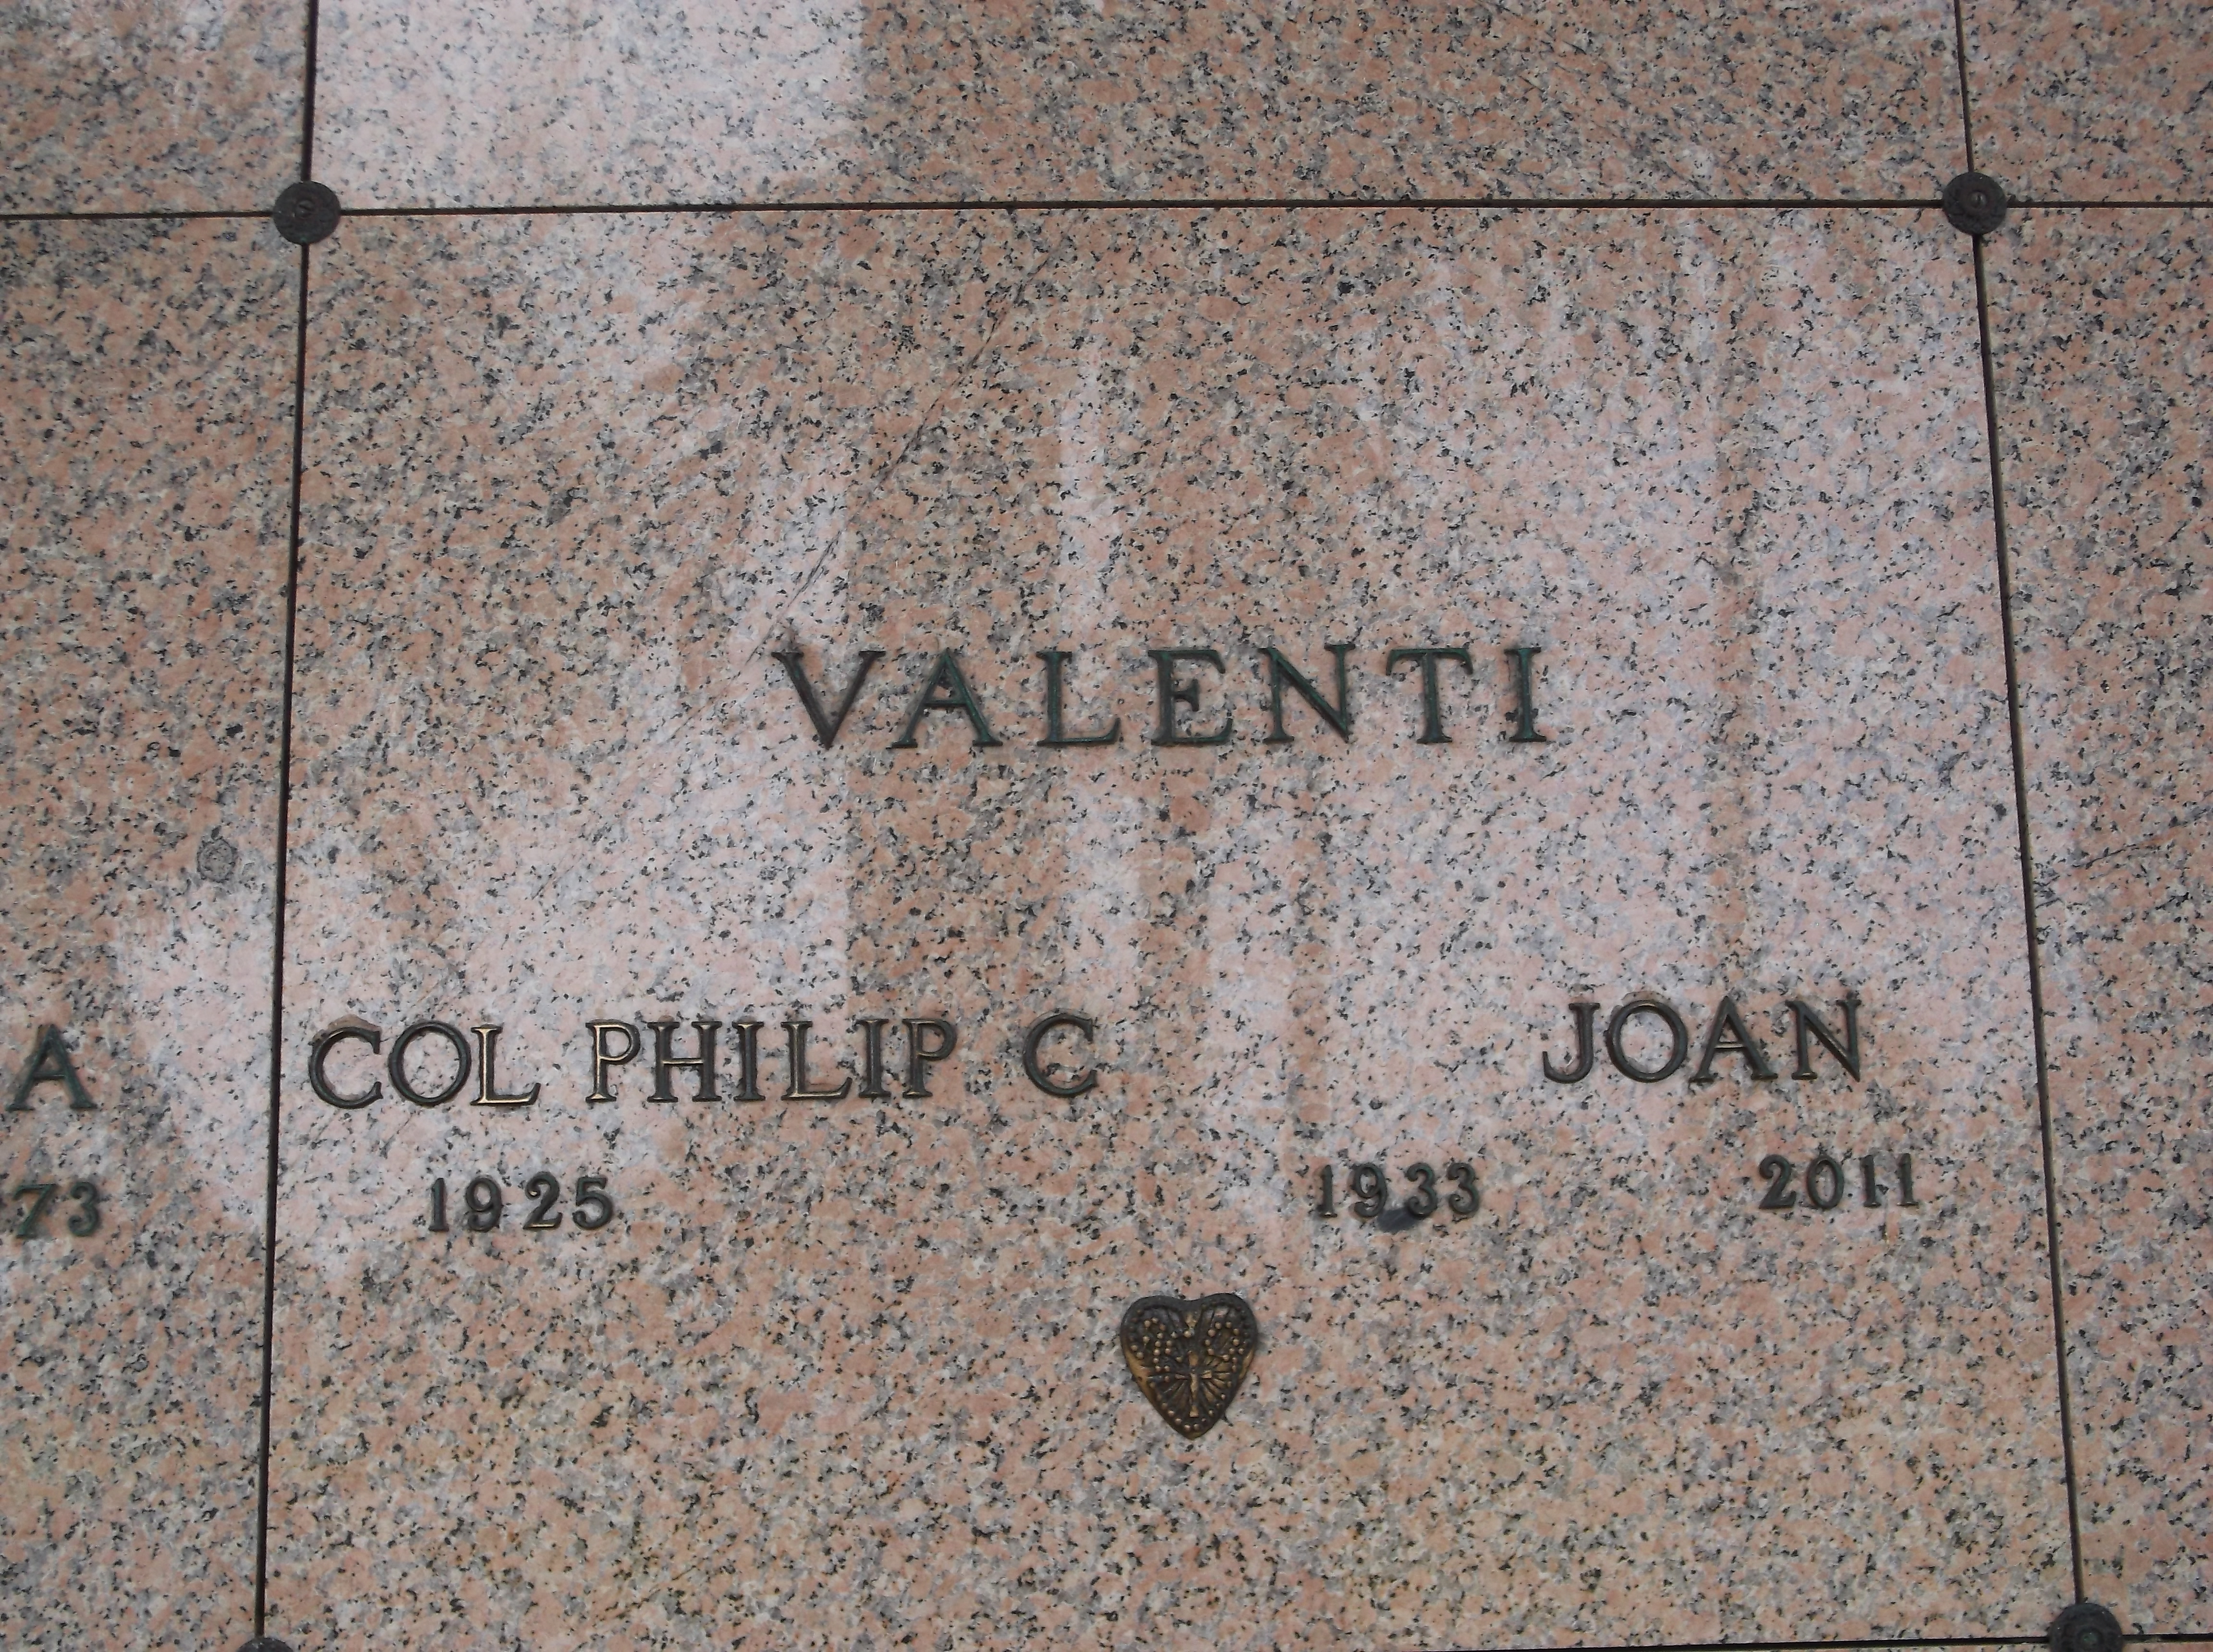 Col Philip C Valenti